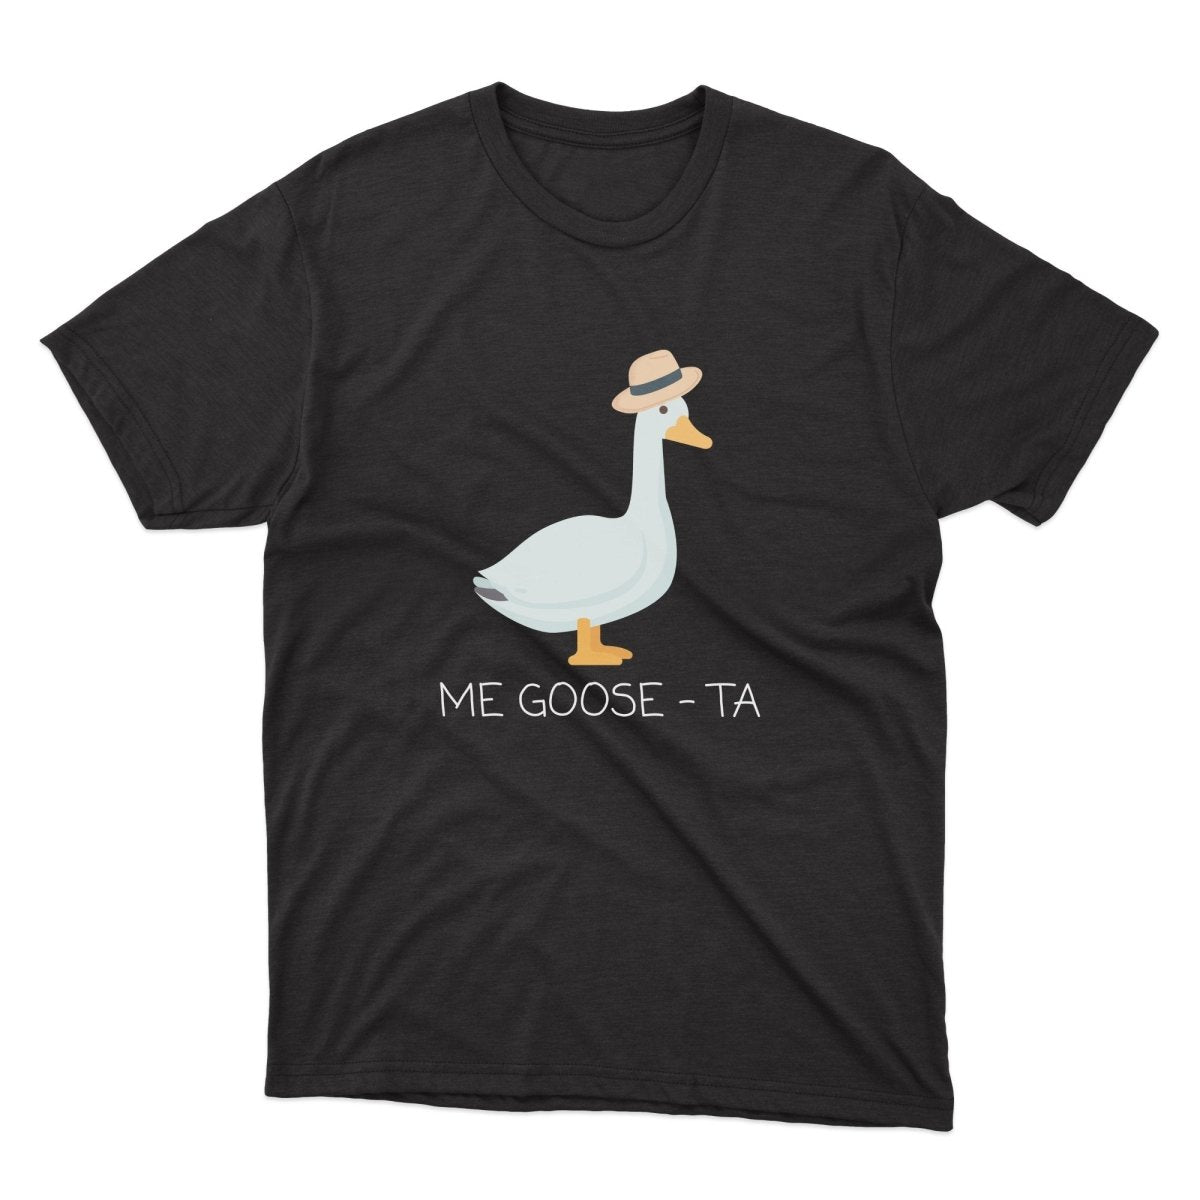 Me Goose Ta Shirt - stickerbullMe Goose Ta ShirtShirtsPrintifystickerbull35757324447010209534BlackSa black t - shirt with a white goose wearing a hat